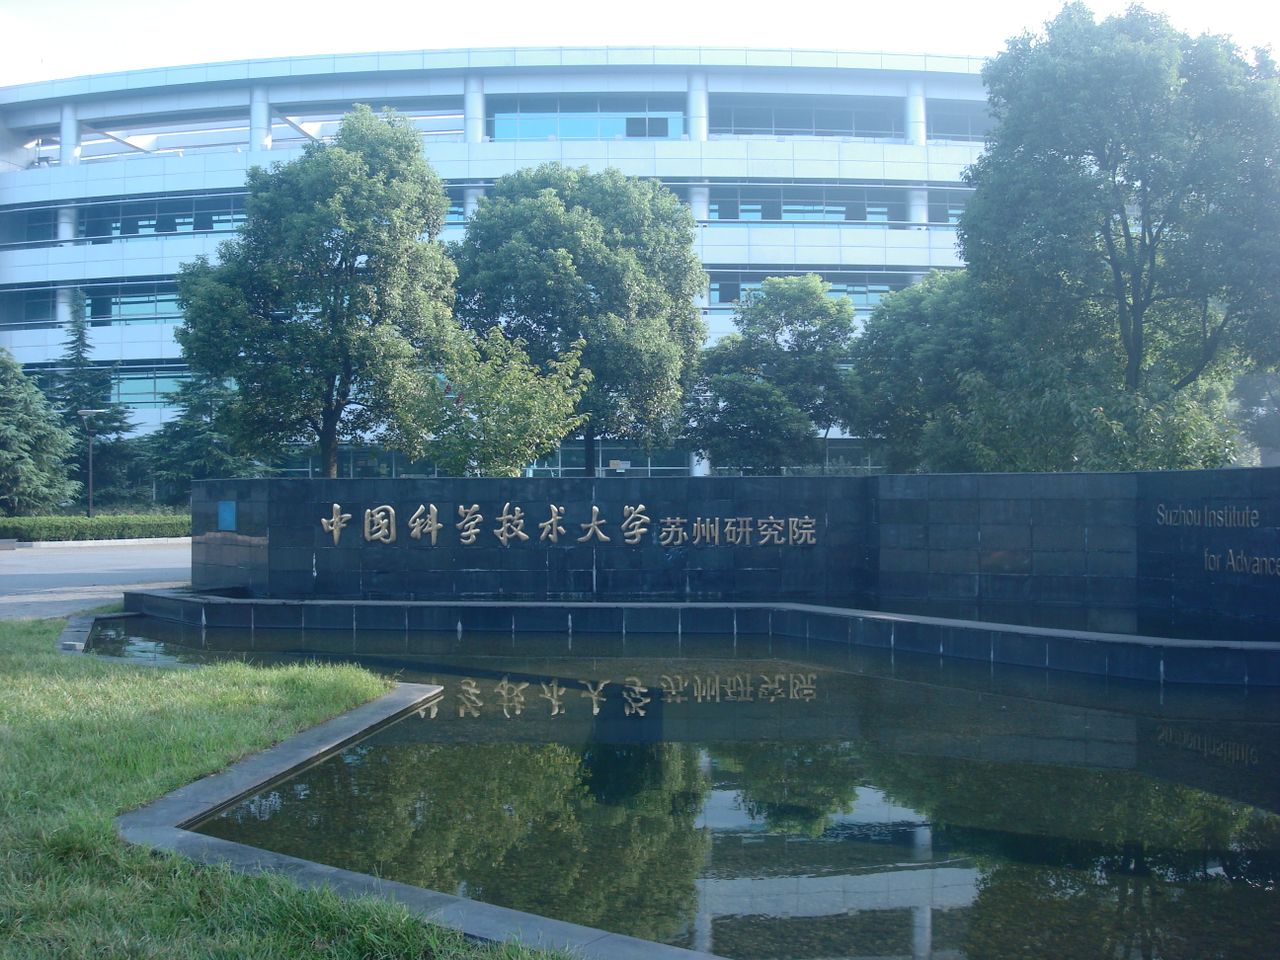 中國科學技術大學蘇州研究院